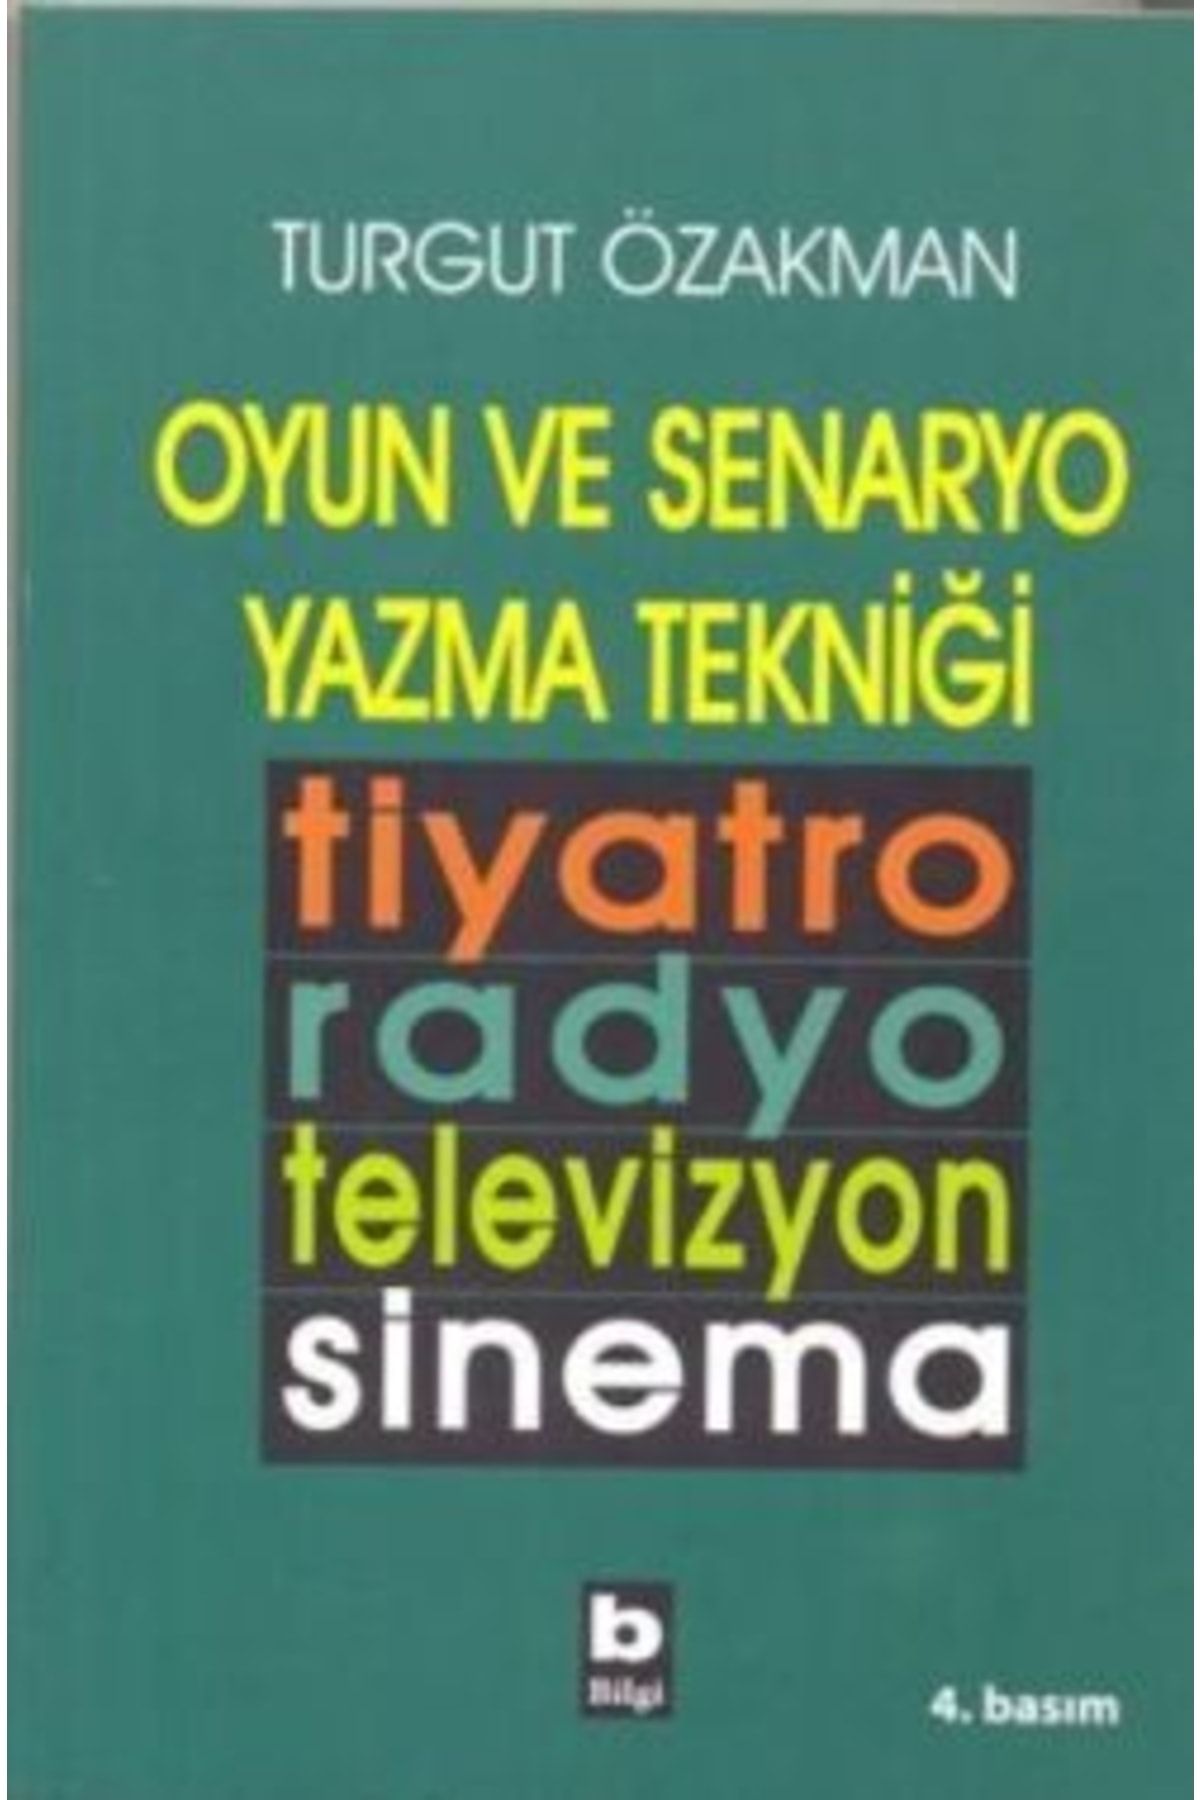 Bilgi Yayınları Oyun Ve Senaryo Yazma Tekniği Tiyatro, Radyo, Televizyon, Sinema